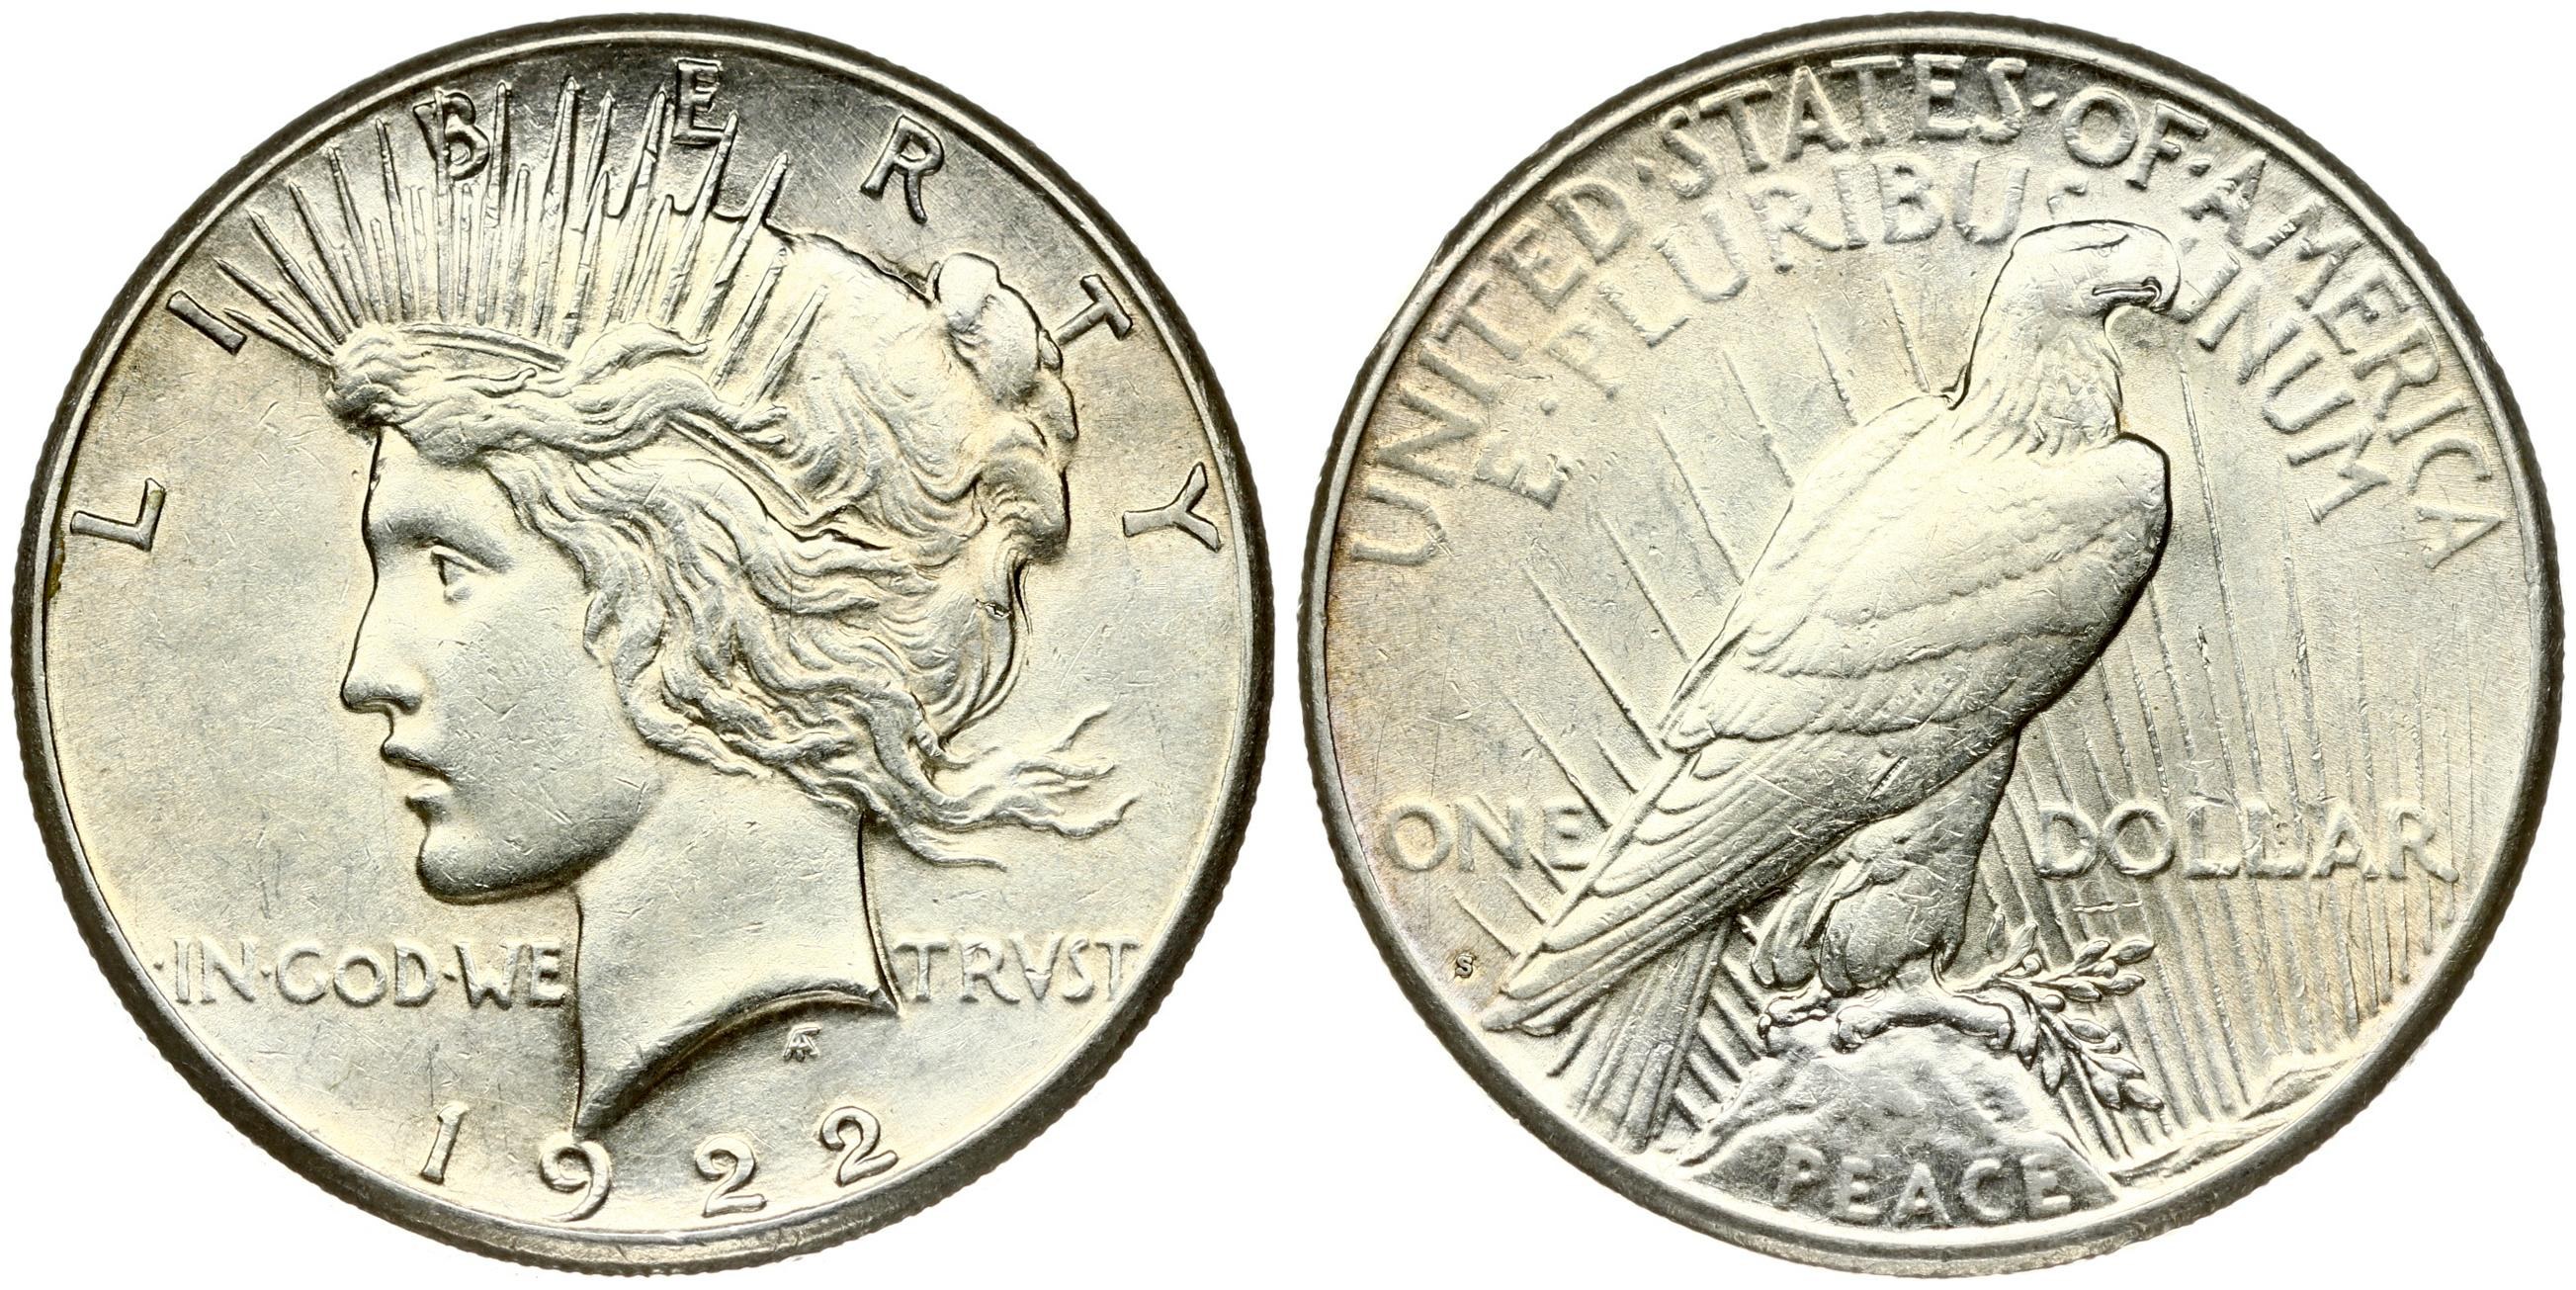 Купить монеты доллары сша. 1 Доллар 1974 Эйзенхауэр. 1 Доллар 1978 США Эйзенхауэр. Монета 1 доллар США Эйзенхауэр 1976. Лунный доллар Эйзенхауэра 1971.